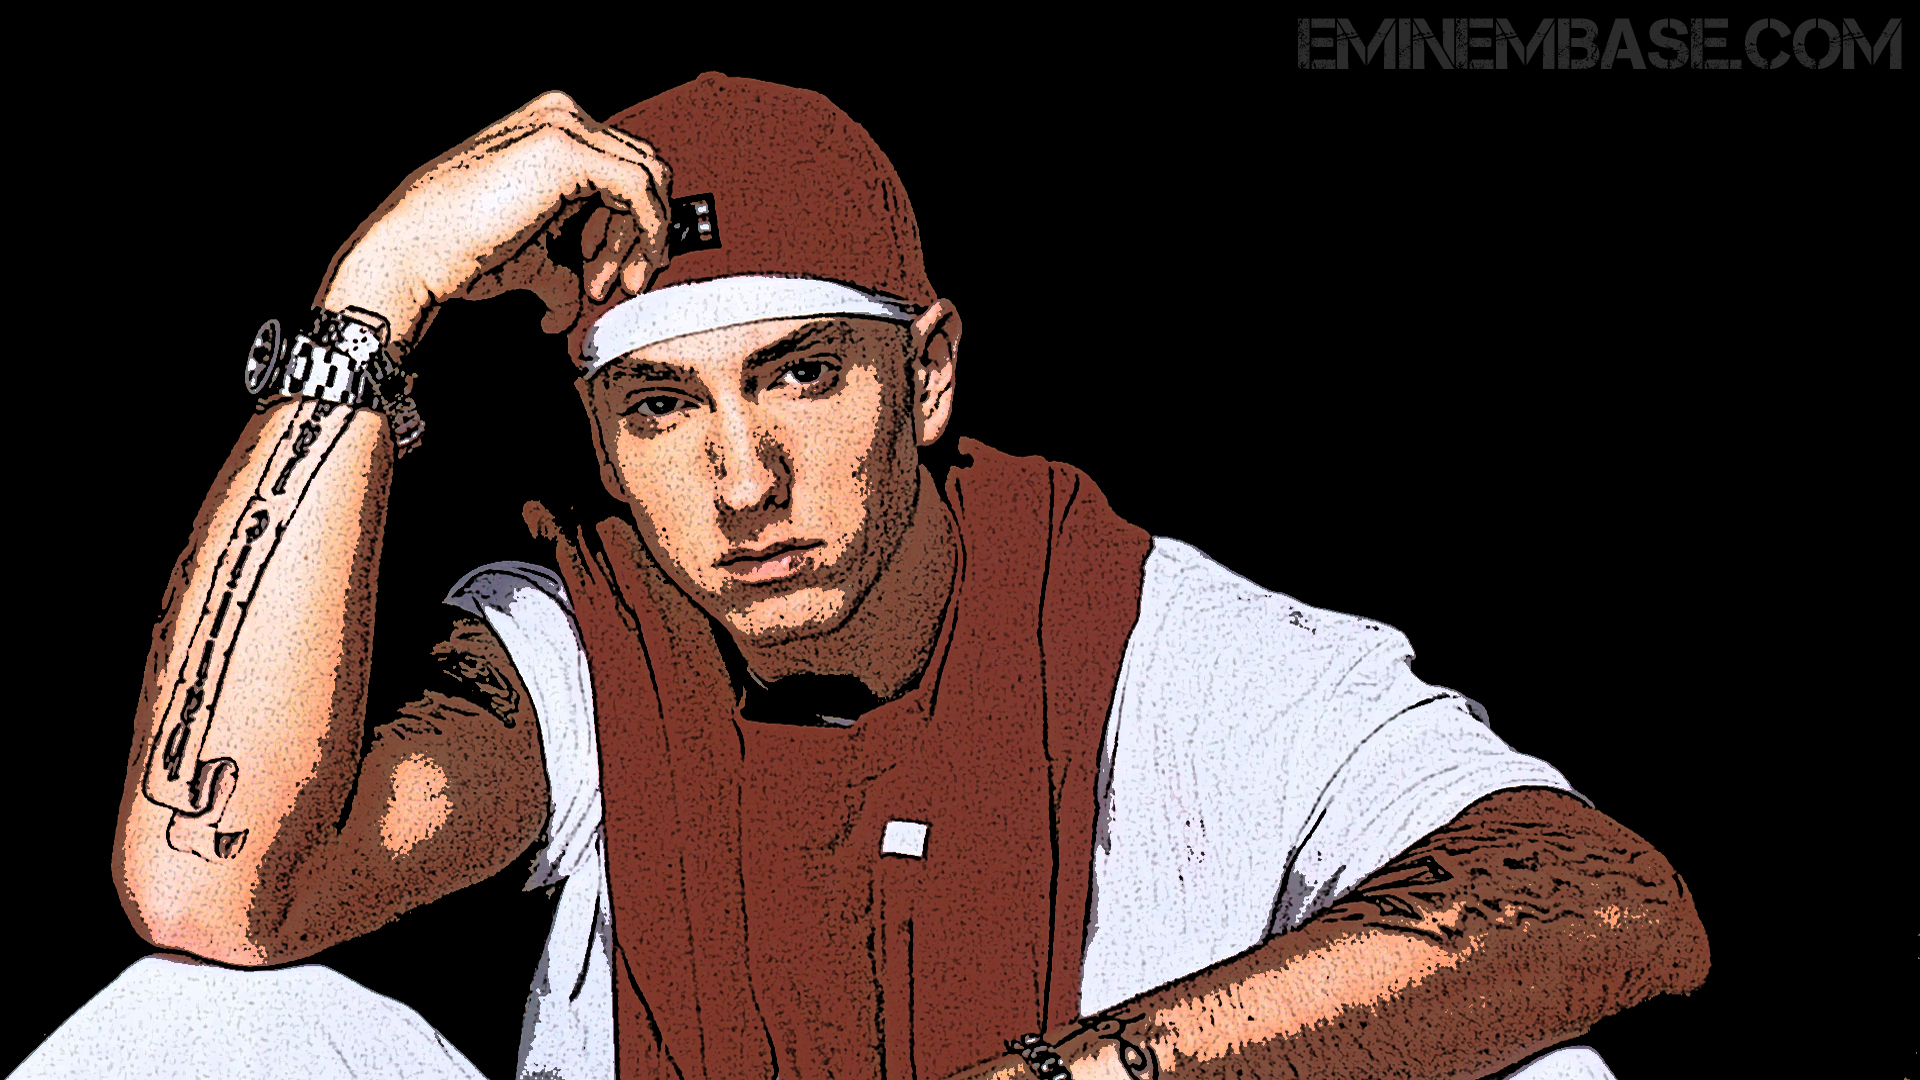 50+] Eminem Wallpapers Free Download - WallpaperSafari